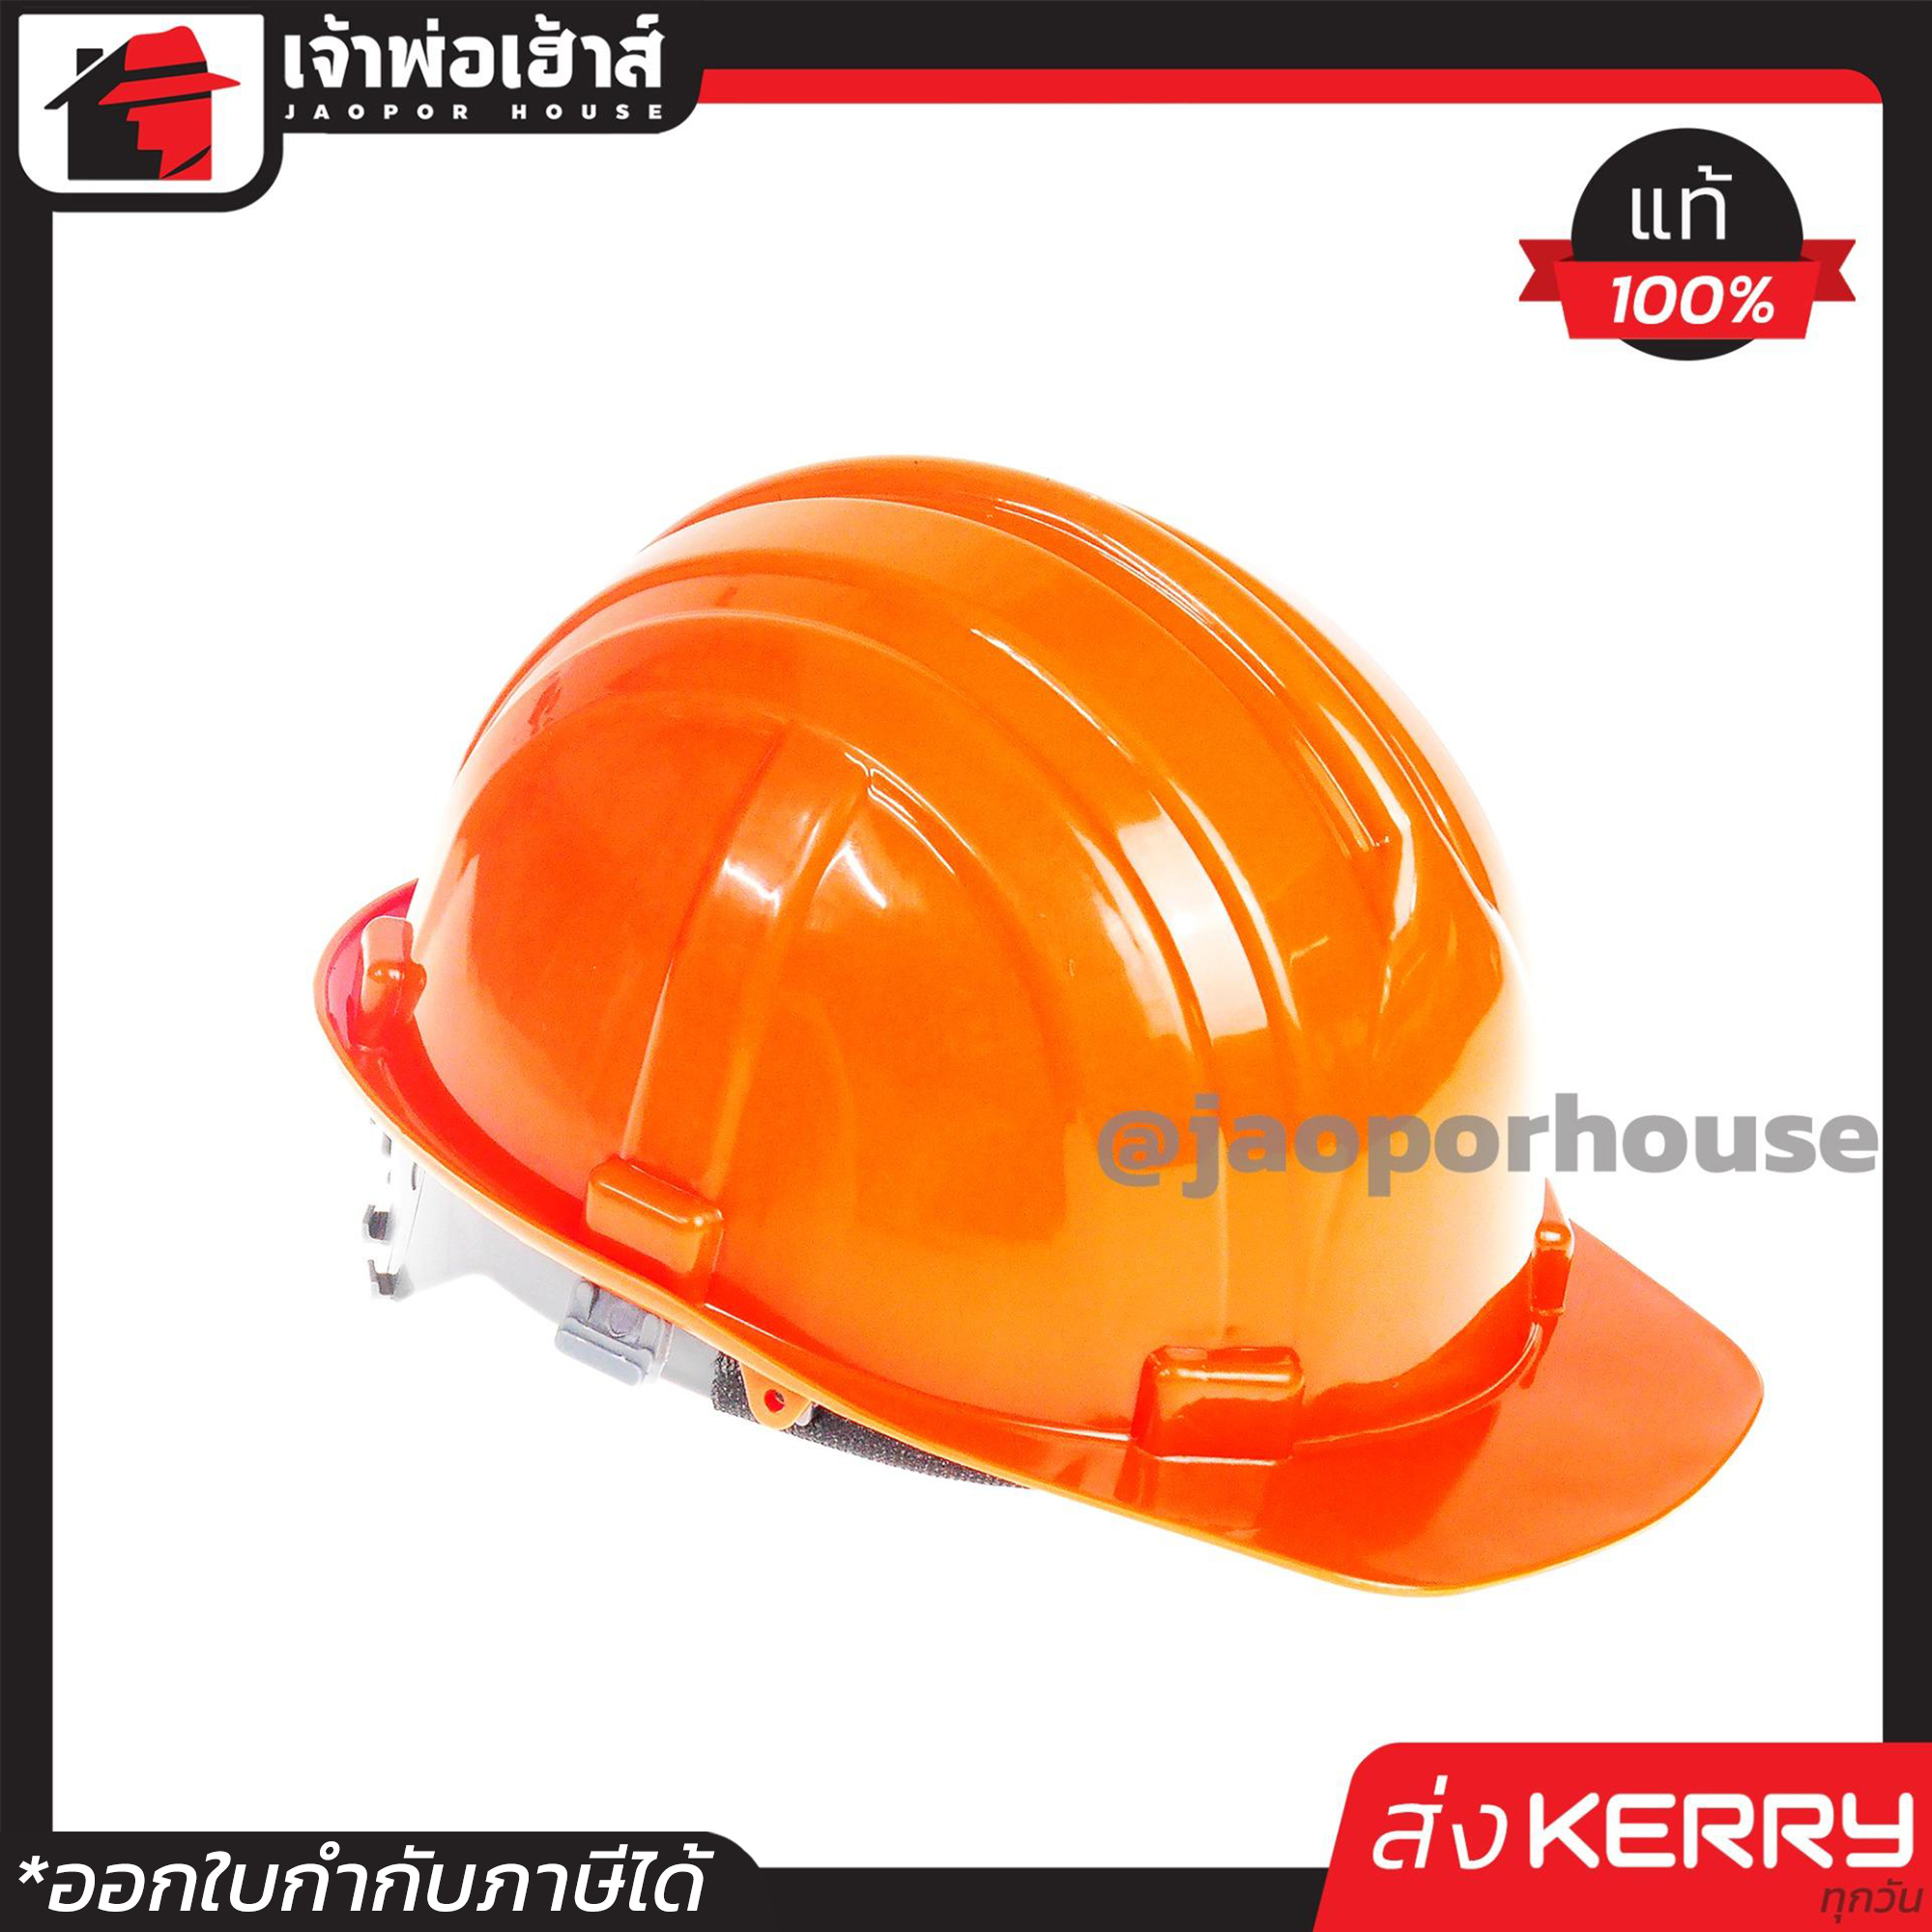 ⚡ส่งLex⚡ หมวกนิรภัย KP สีส้ม ขนาด 50-65 cm. น้ำหนักเบาใส่สบาย หมวกเซฟตี้ หมวกวิศวะกร หมวกวิศวะ Safety Helmet